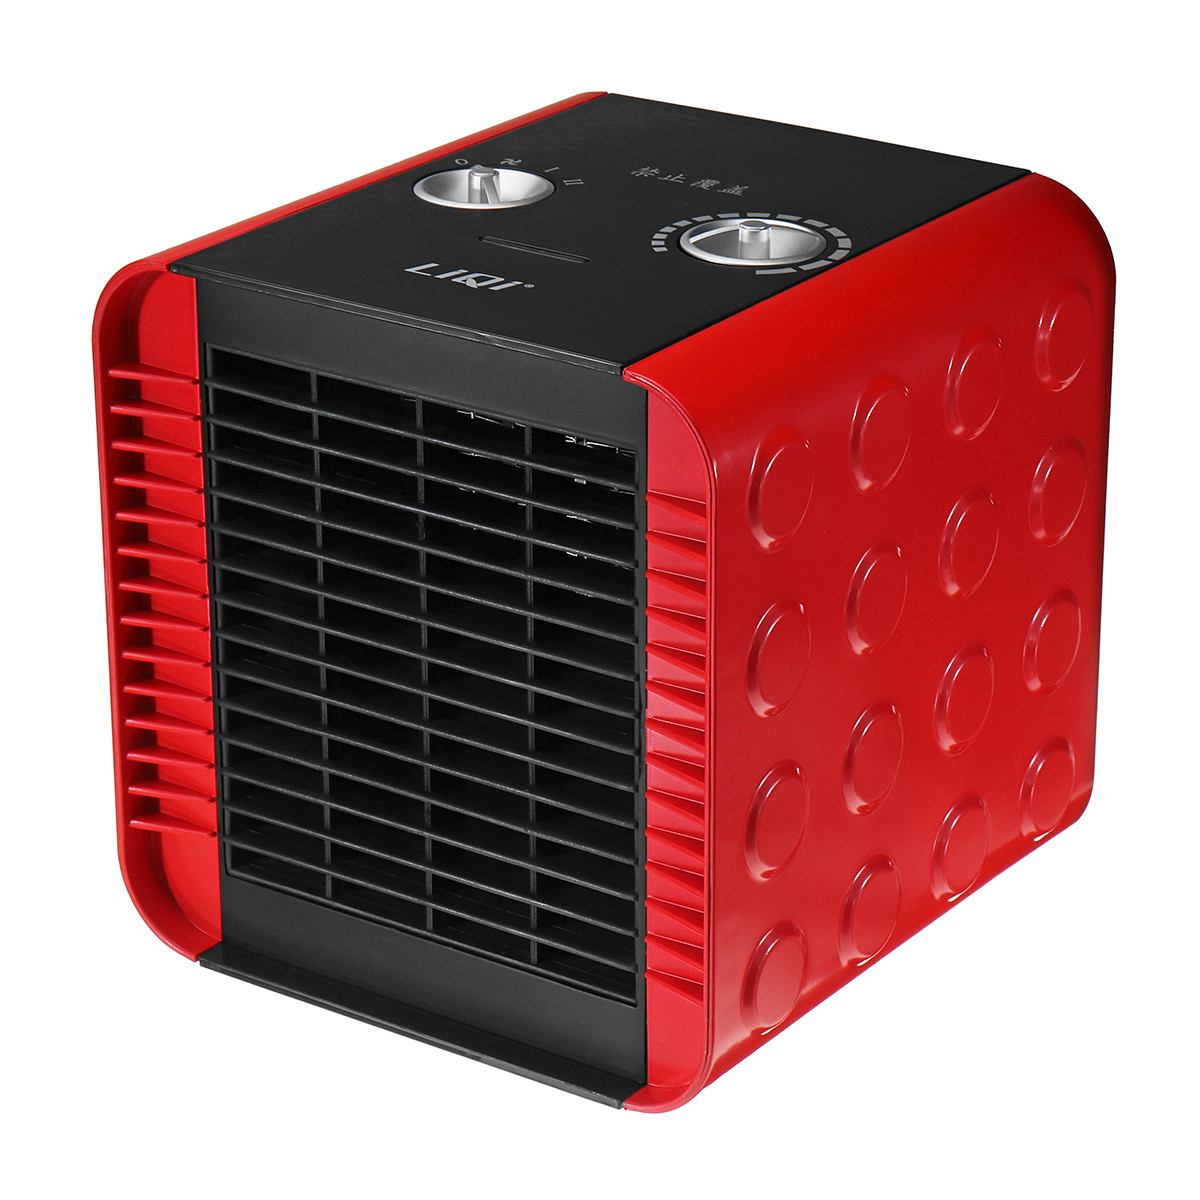 

1500W Регулируемый PTC Электрический Нагреватель Портативный теплый вентилятор Нагреватель Вентилятор мини-нагревателя